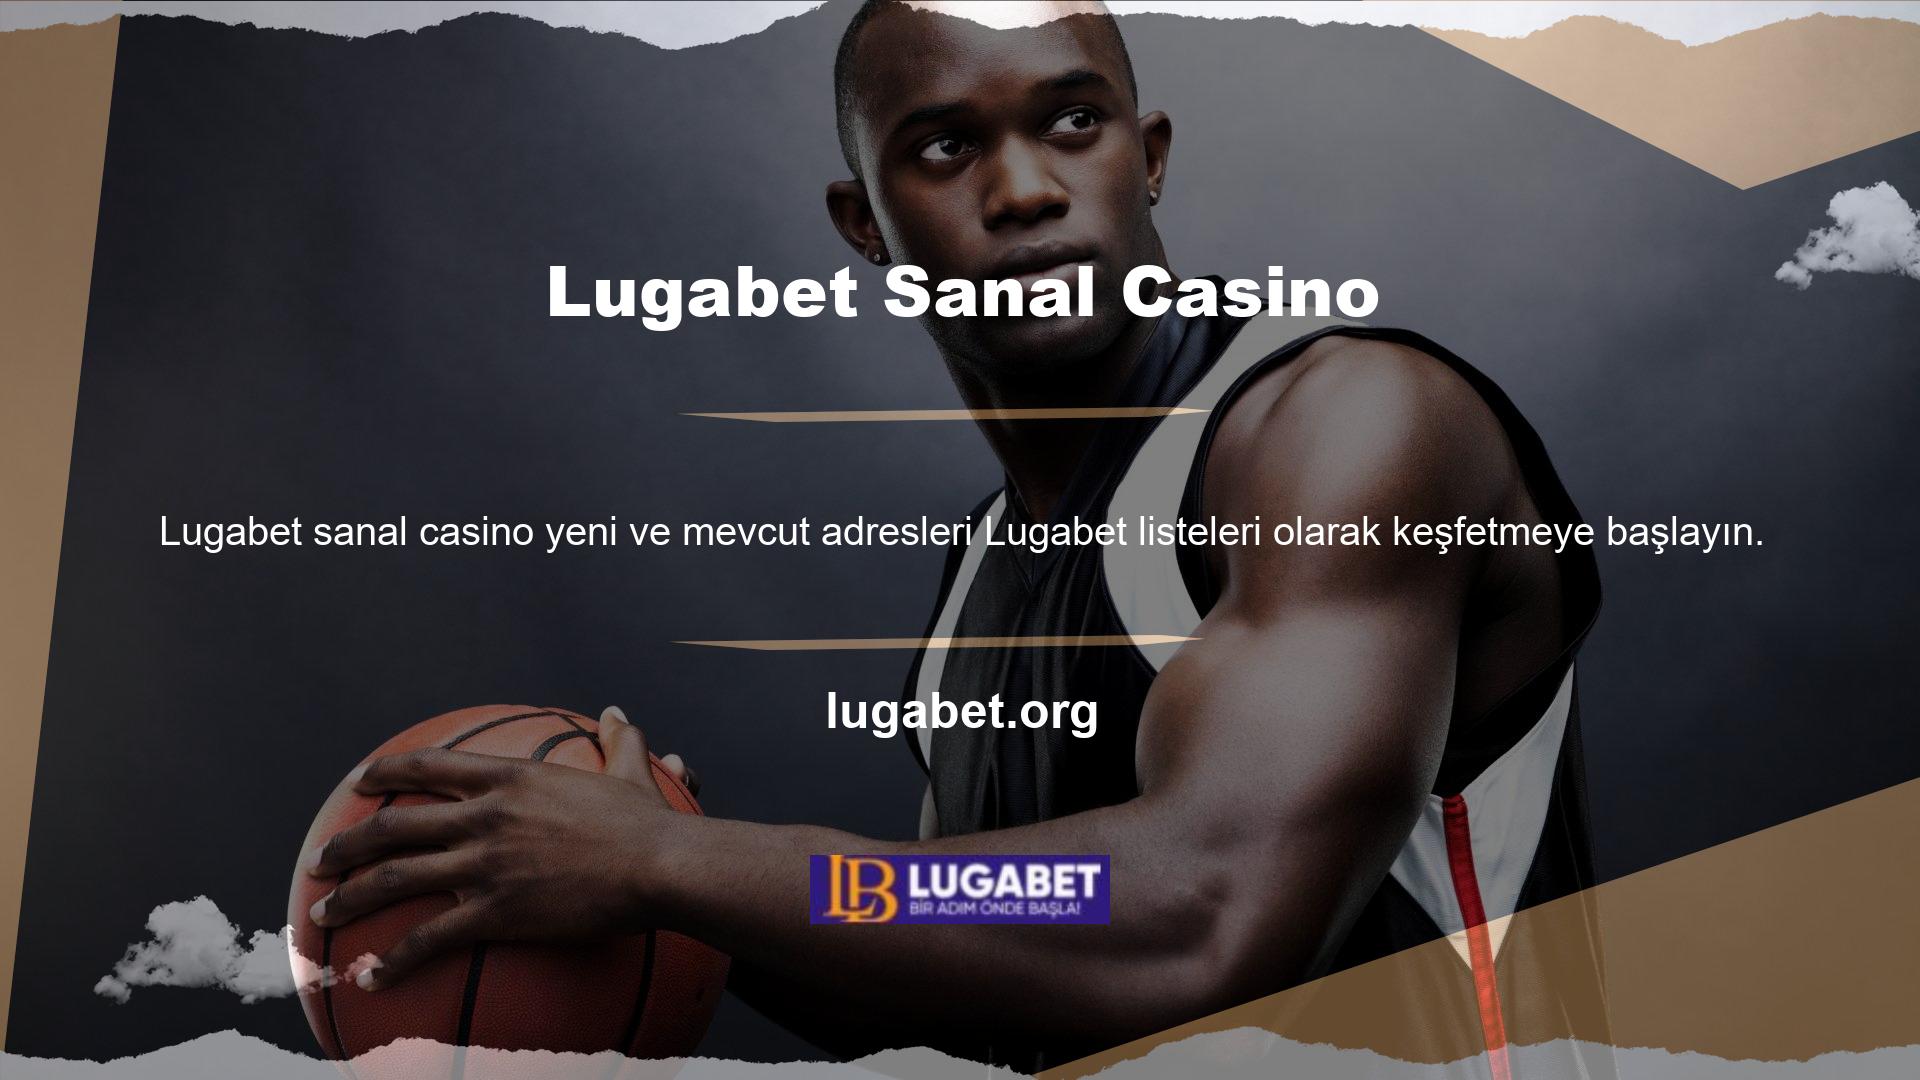 Lugabet, sanal casino endüstrisindeki kullanıcıların kısa sürede heyecanlanmasına ve büyük kazanmasına yardımcı olan bir platformdur